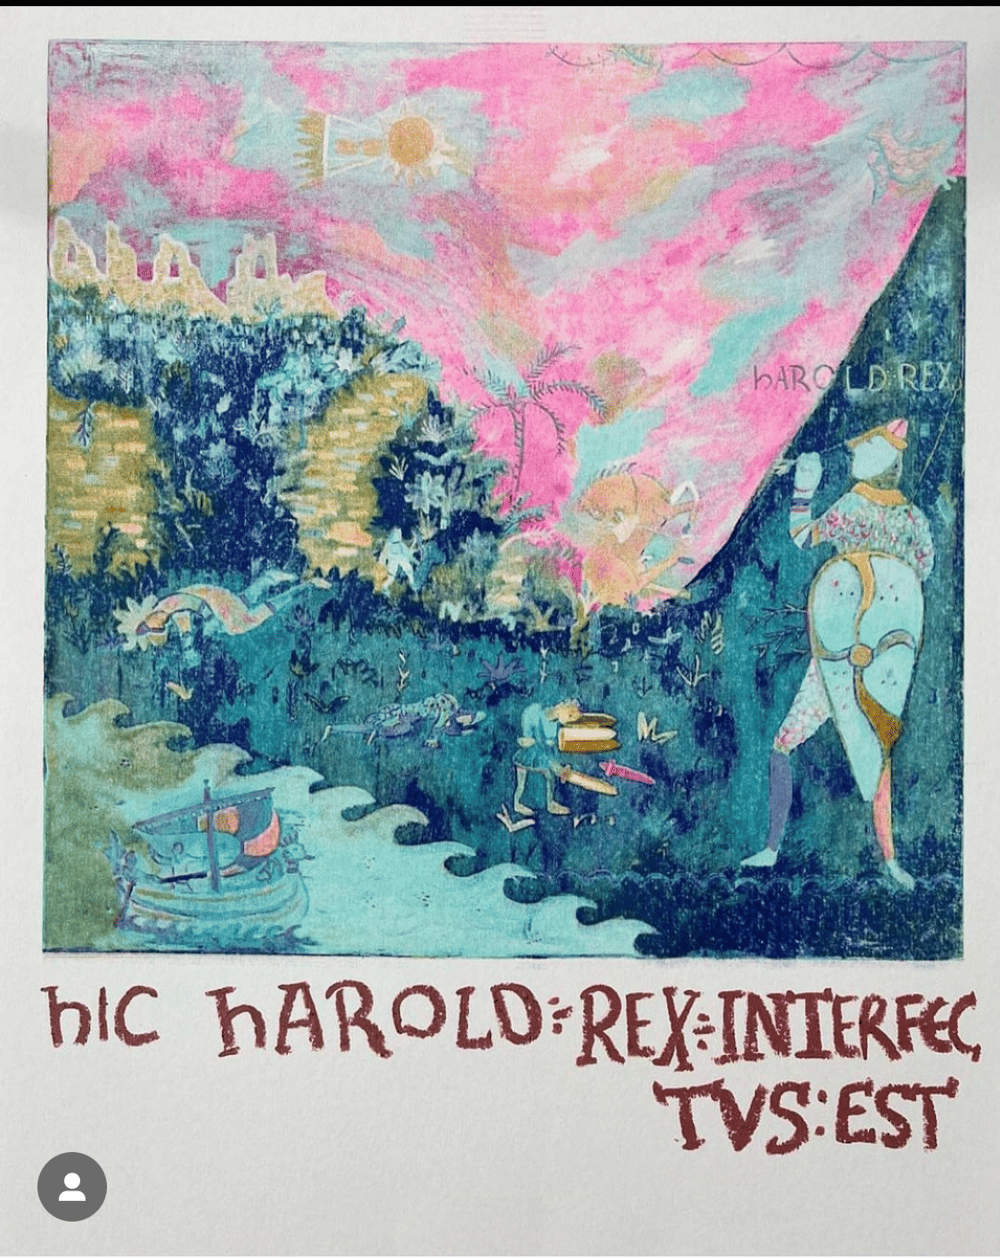 Hic Harold Rex print by Annie mackin 